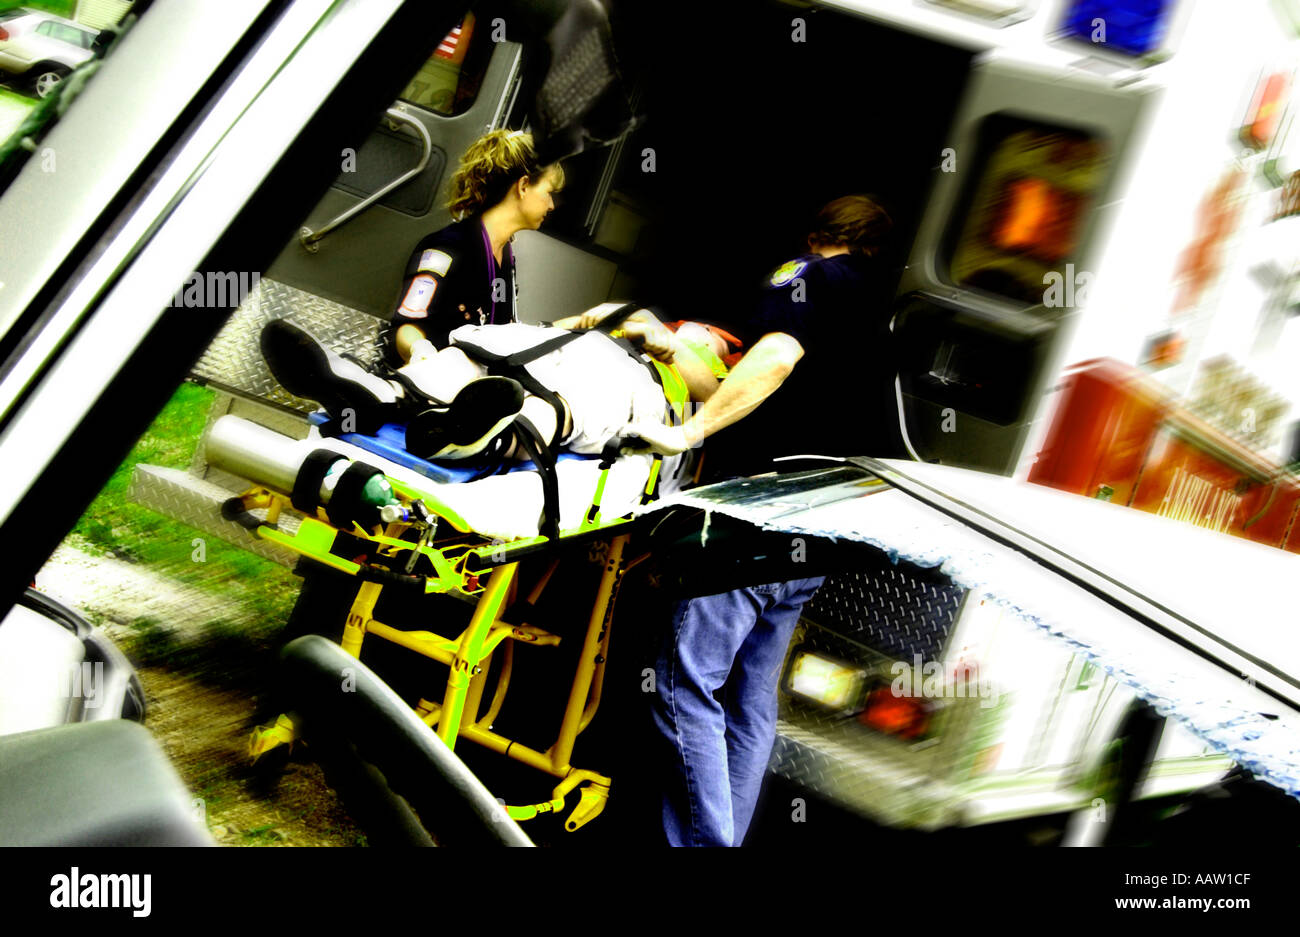 Tum loading patient en ambulance Banque D'Images